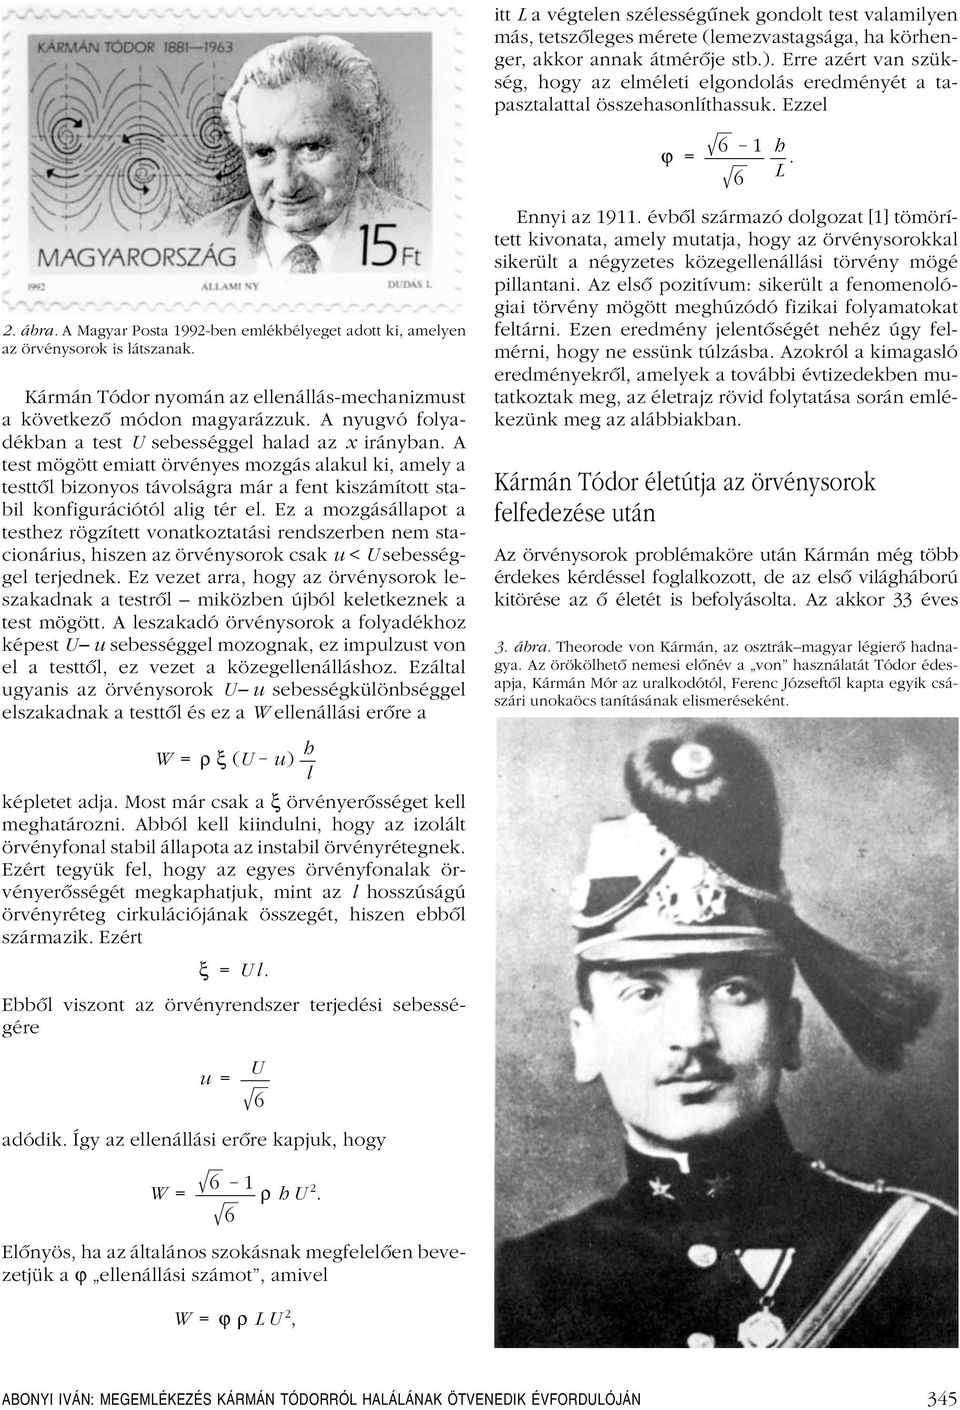 A Magyar Posta 1992-ben emlékbélyeget adott ki, amelyen az örvénysorok is látszanak. Kármán Tódor nyomán az ellenállás-mechanizmust a következô módon magyarázzuk.